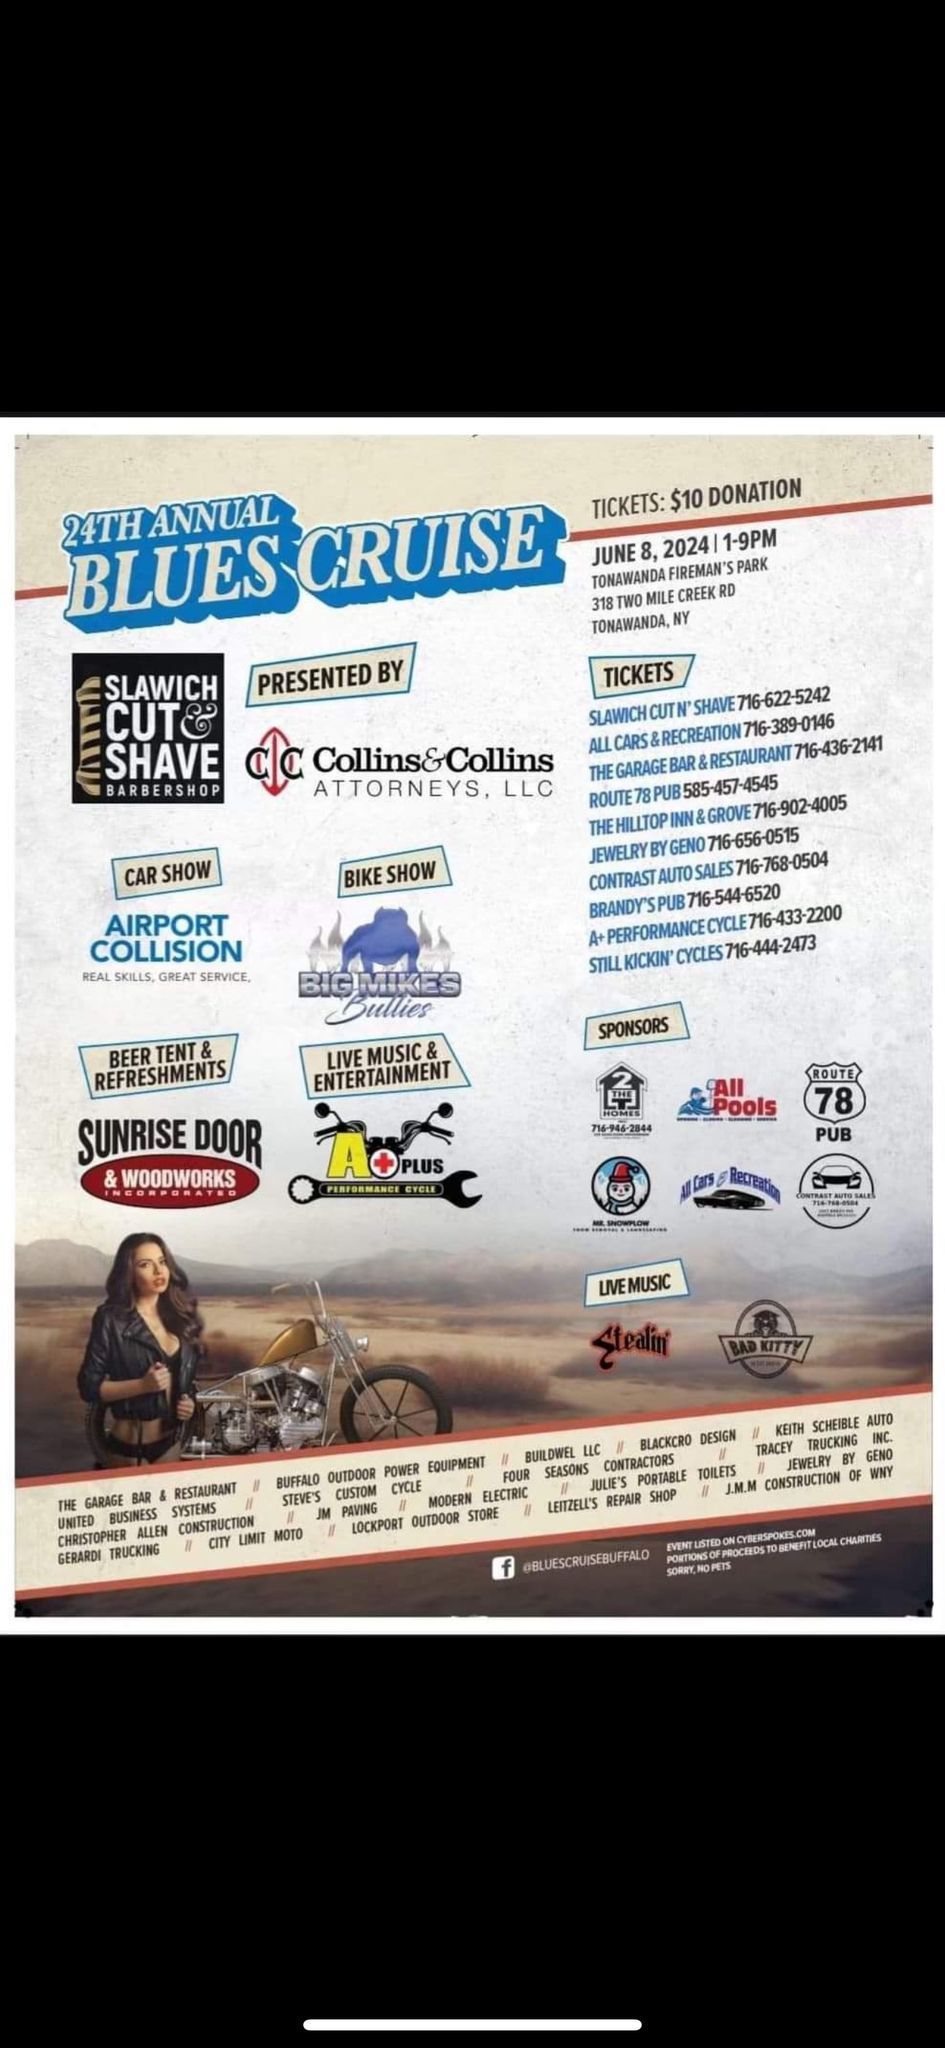 24th Annual Blues Cruise